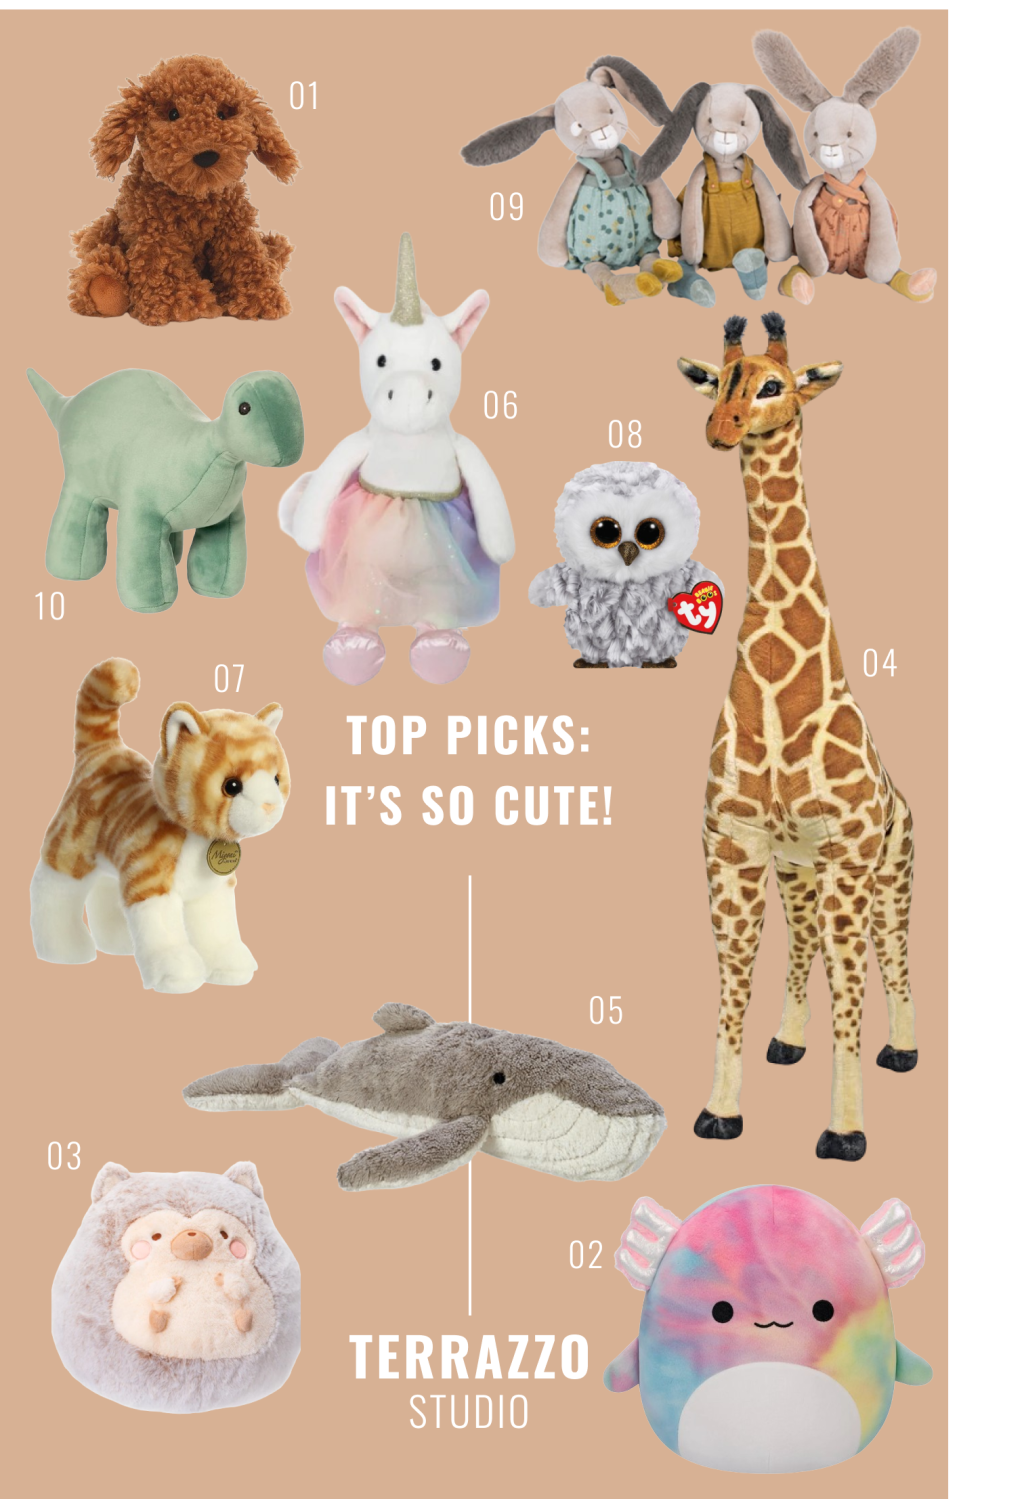 Top Picks: It’s So Cute!